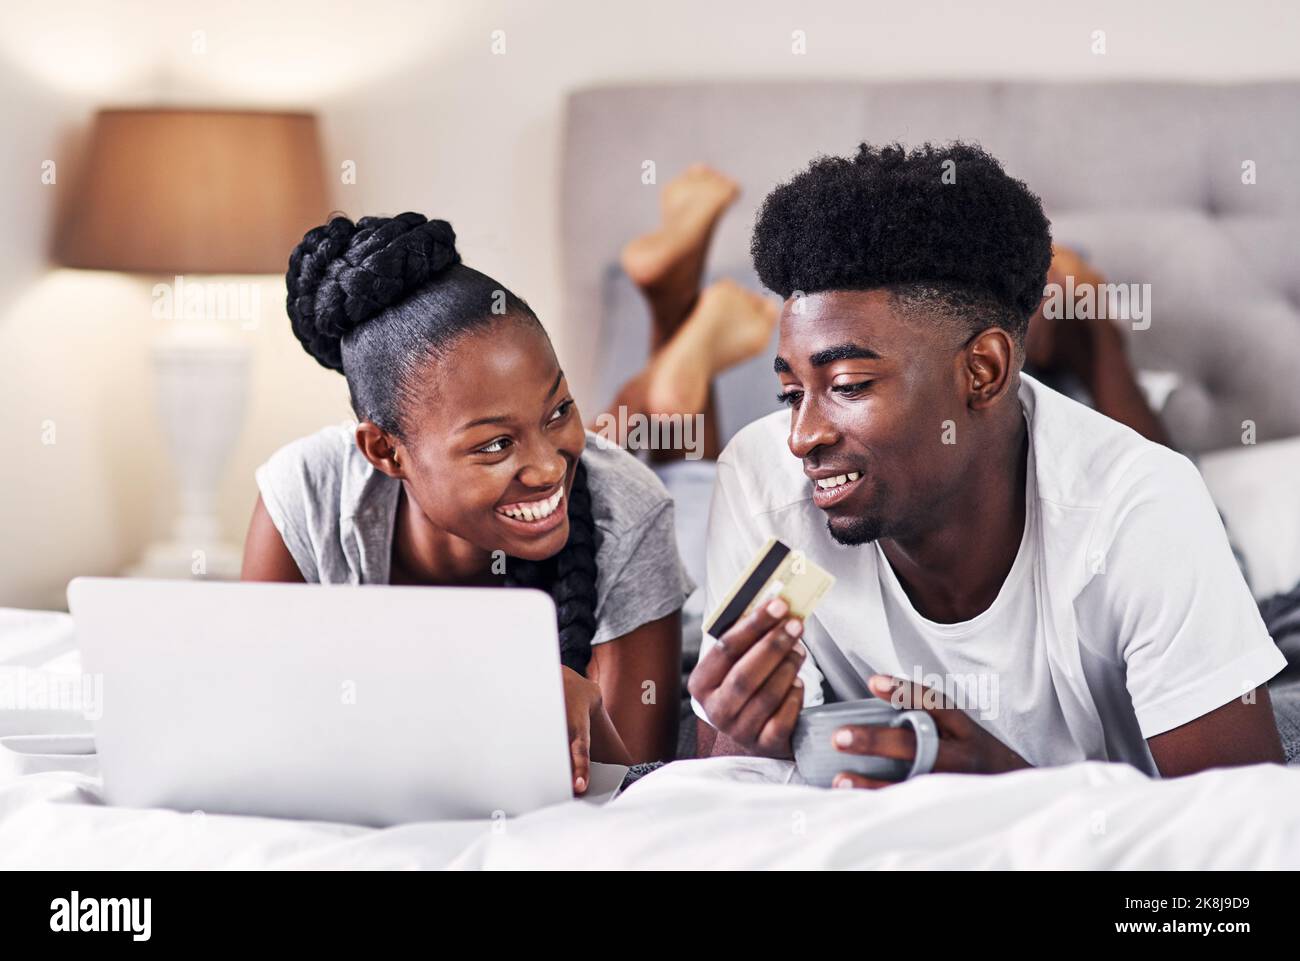 Credo che dovremmo iscriverci: Una giovane coppia che usa una carta di credito mentre naviga in rete. Foto Stock